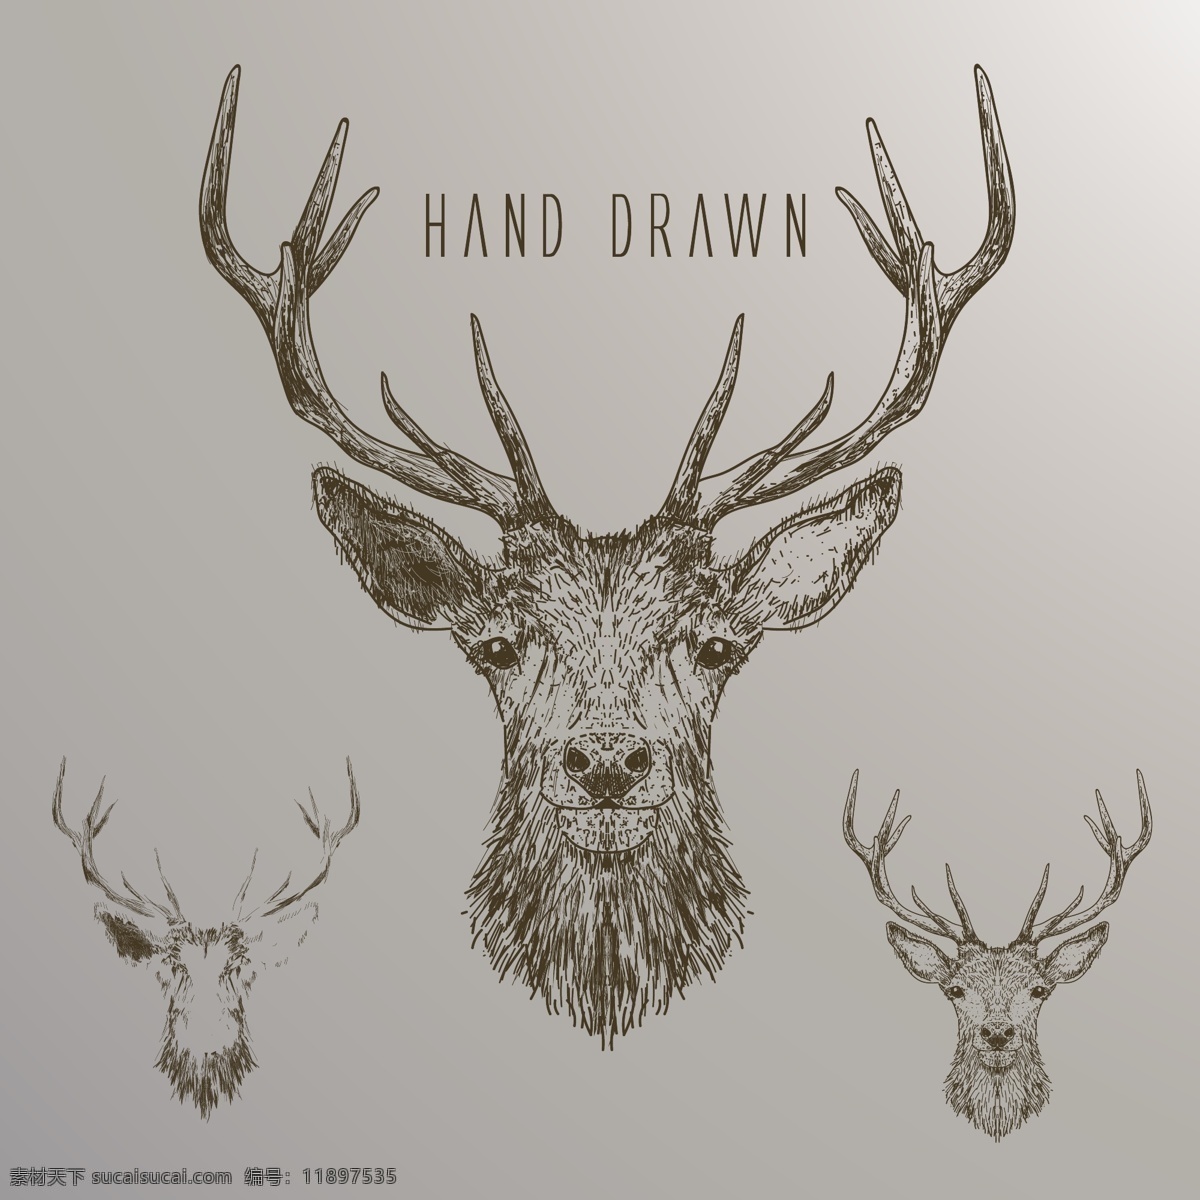 麋鹿 小鹿 鹿 卡通 森林动物 ai矢量图 装饰插画 印刷背景图 设计素材 矢量图